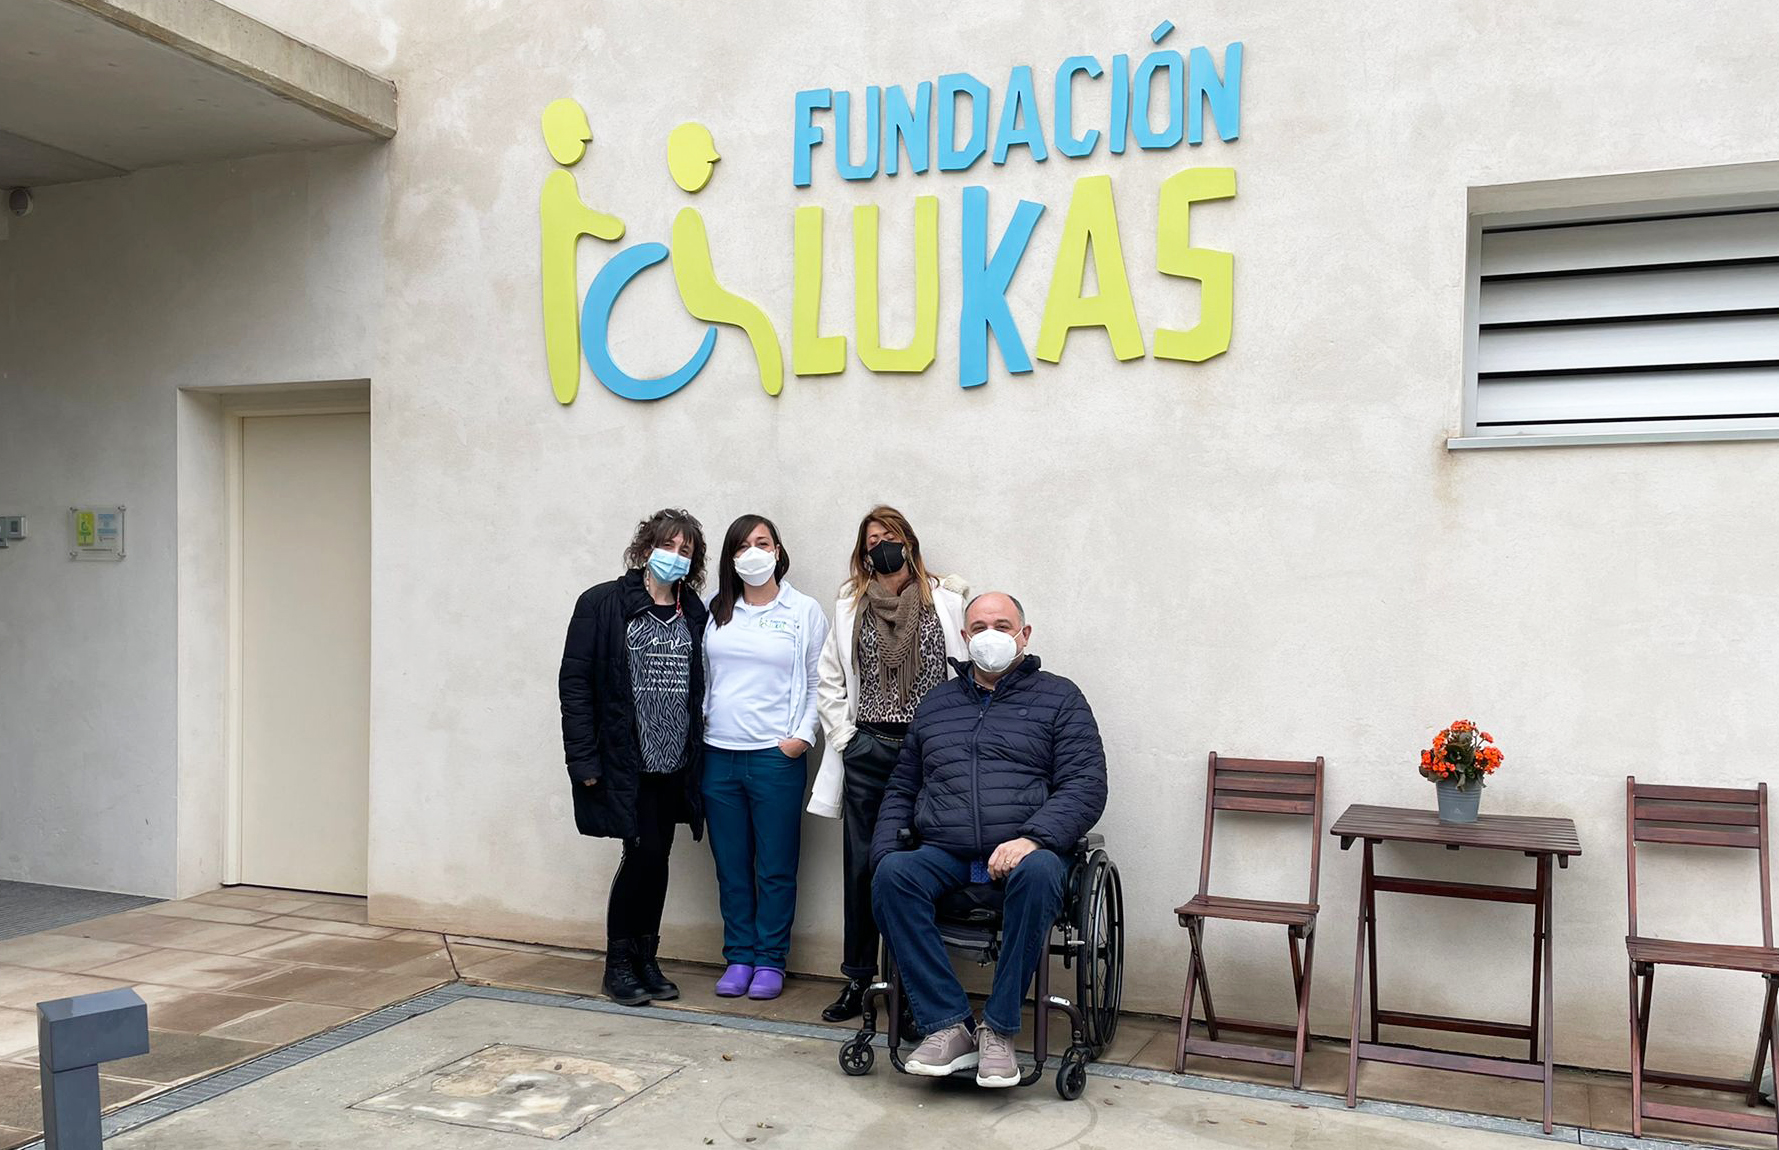 Visita a nuestra entidad federada Fundación Lukas